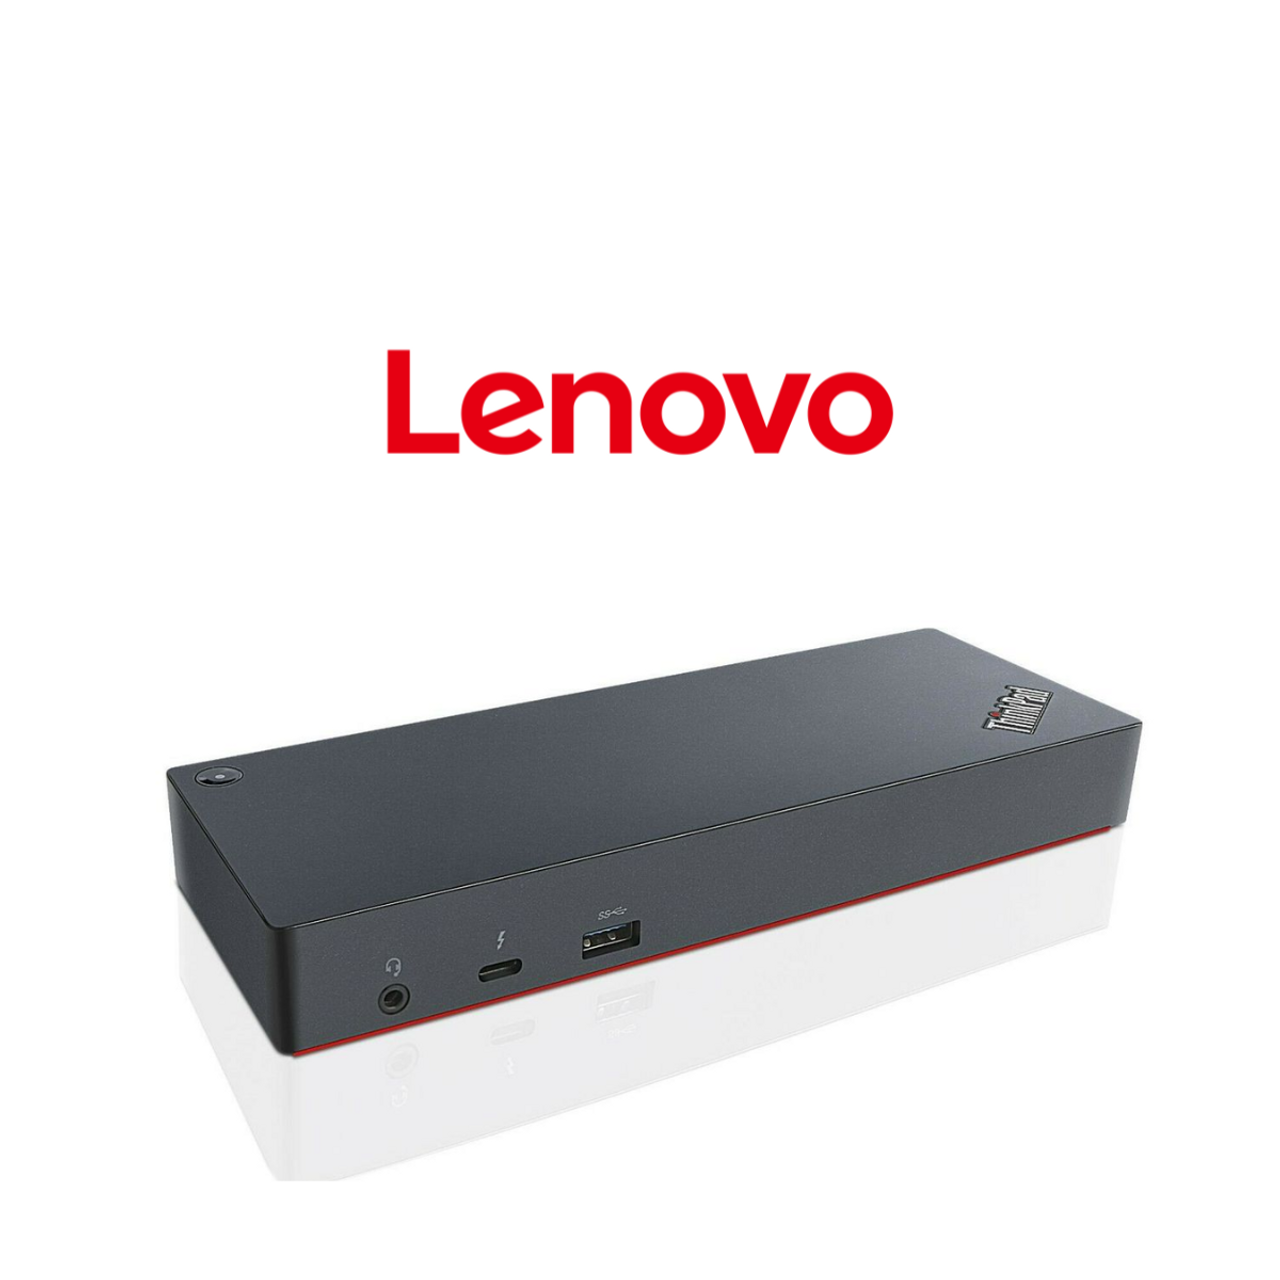 Lenovo ThinkPad 40AC0135US Thunderbolt 3 Dock  product image